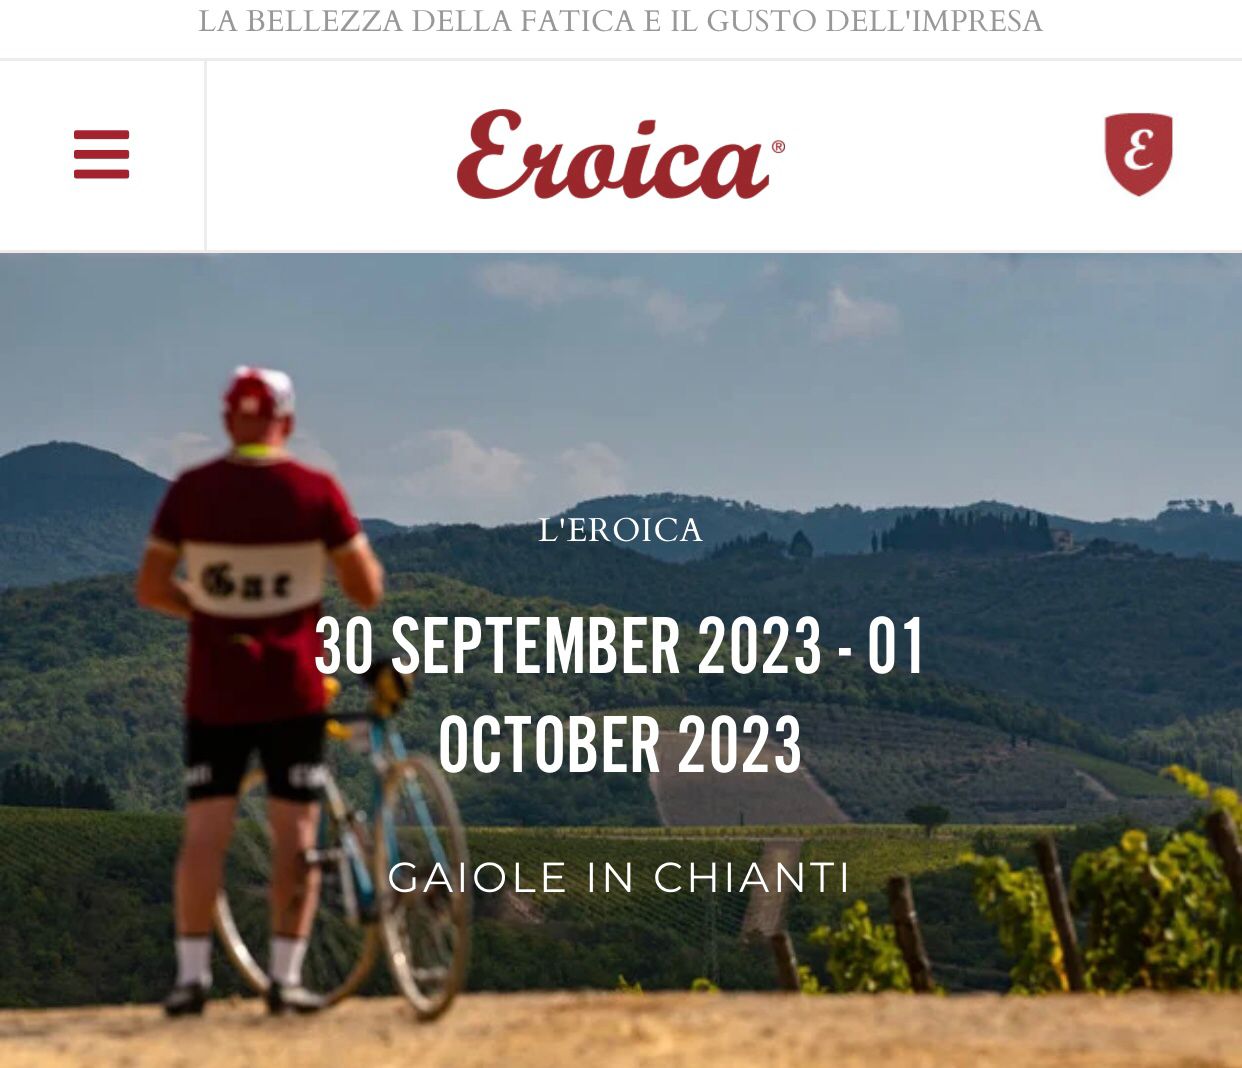 Eroica 2023: in bicicletta per la cura-Fondazione Italiana Diabete ETS